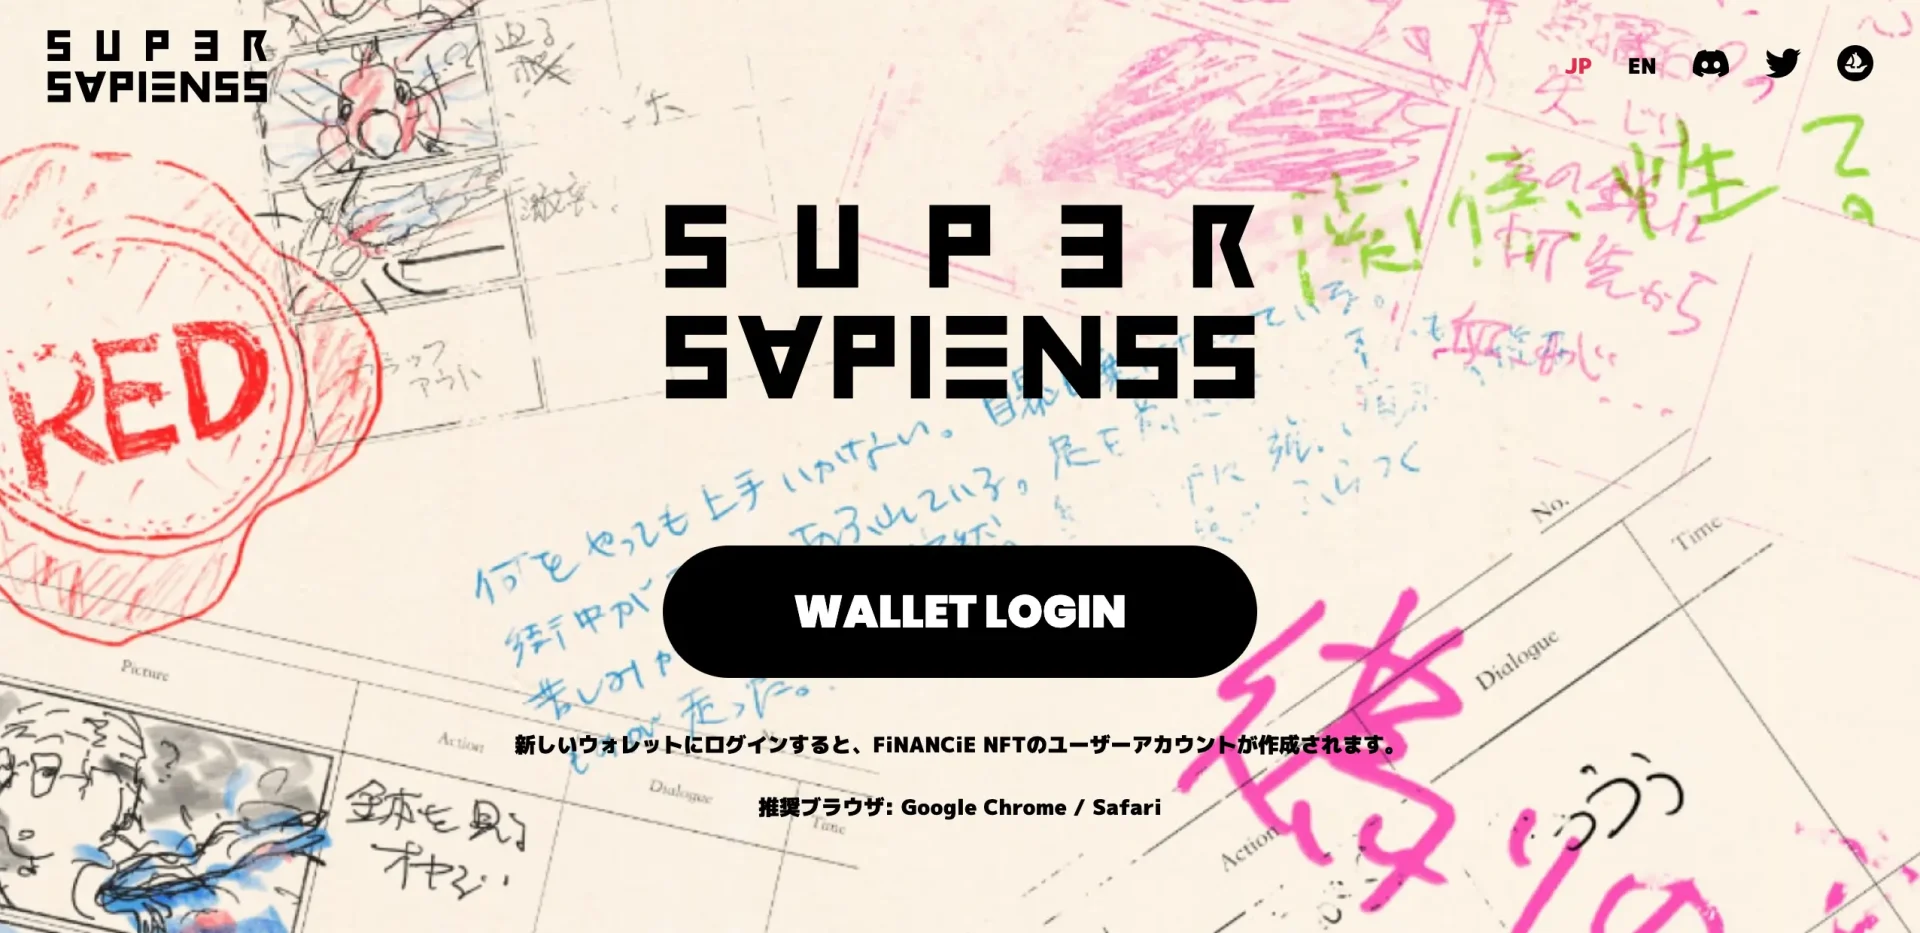 SuperSapienss(スーパーサピエンス)のミント(mint)サイト